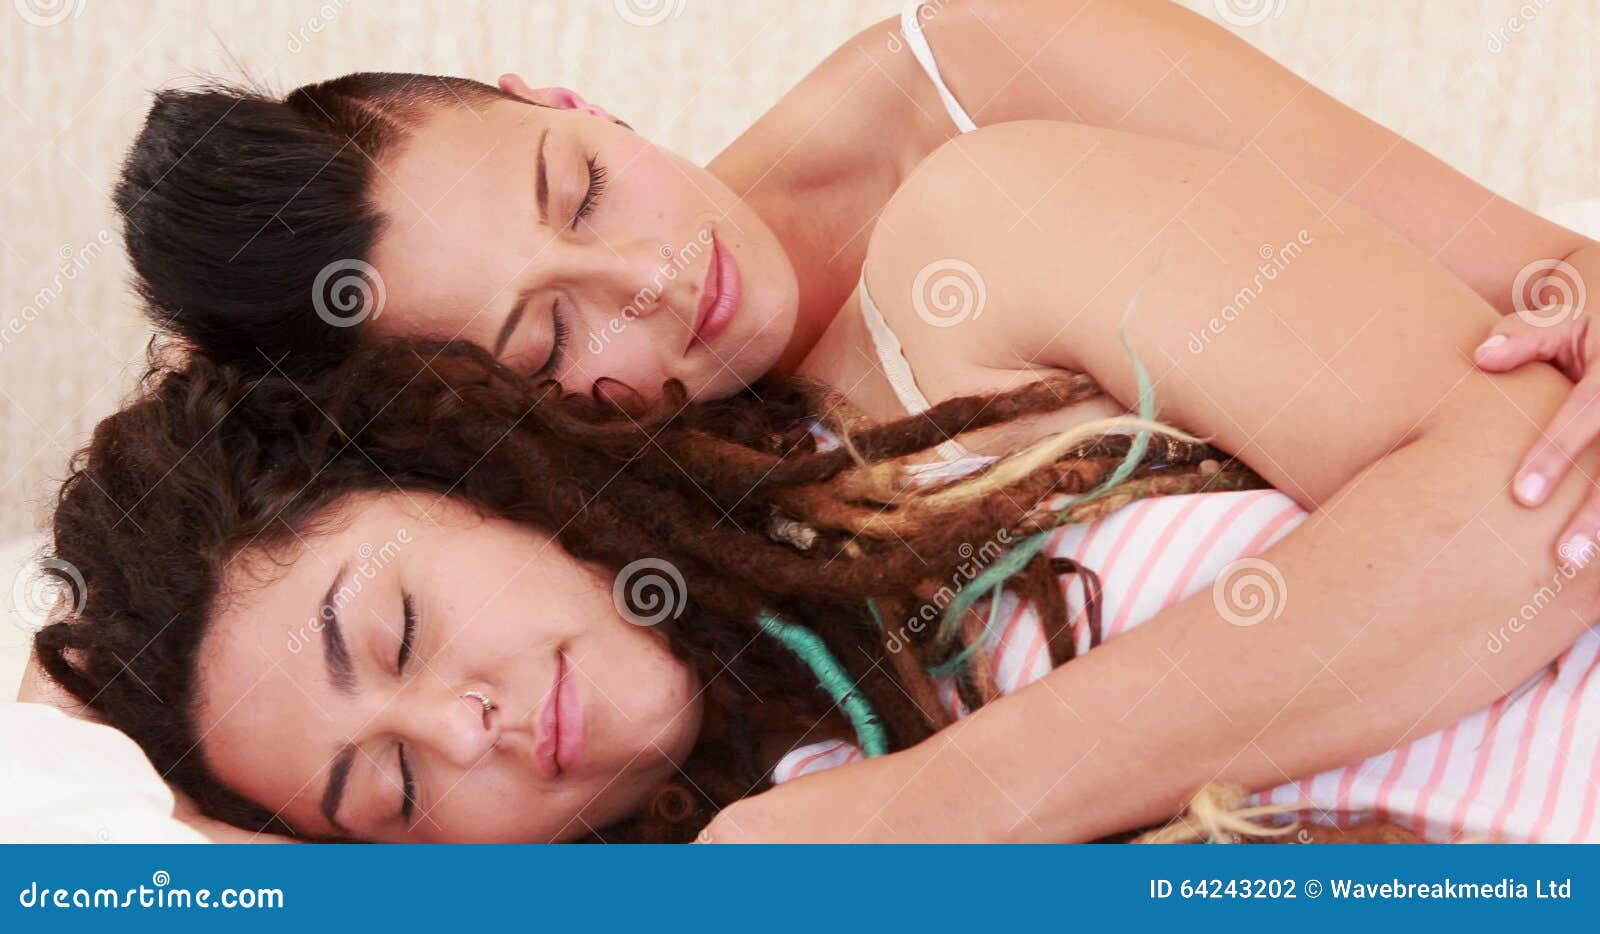 Sleeping lesbian porn